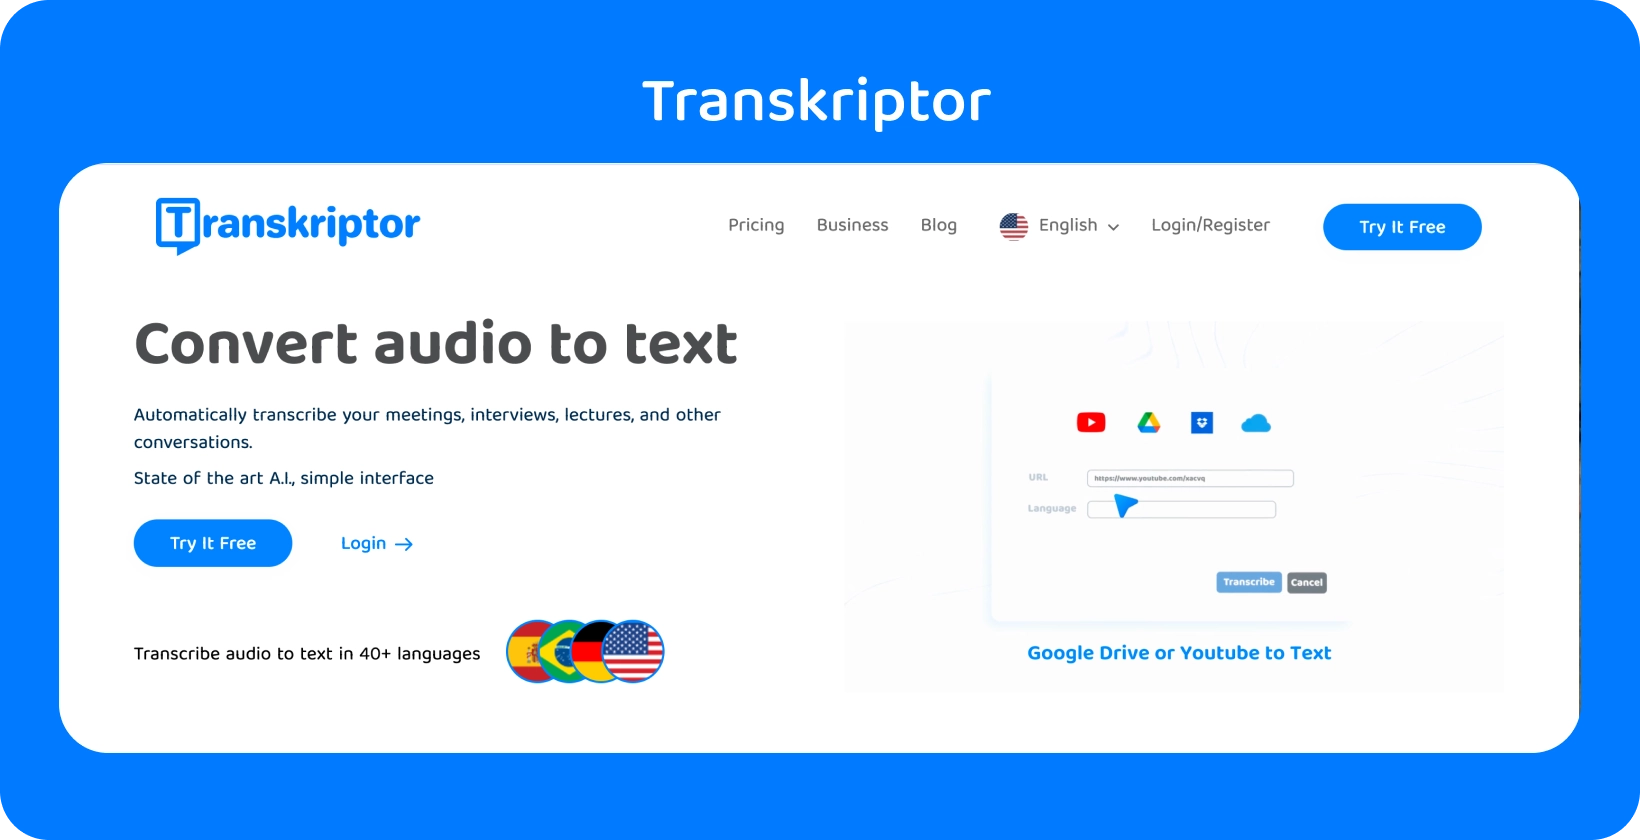 Transkriptor weboldala megemlíti a "Hang konvertálása szöveggé" funkciót, amely készen áll az egyszerű átírásra.